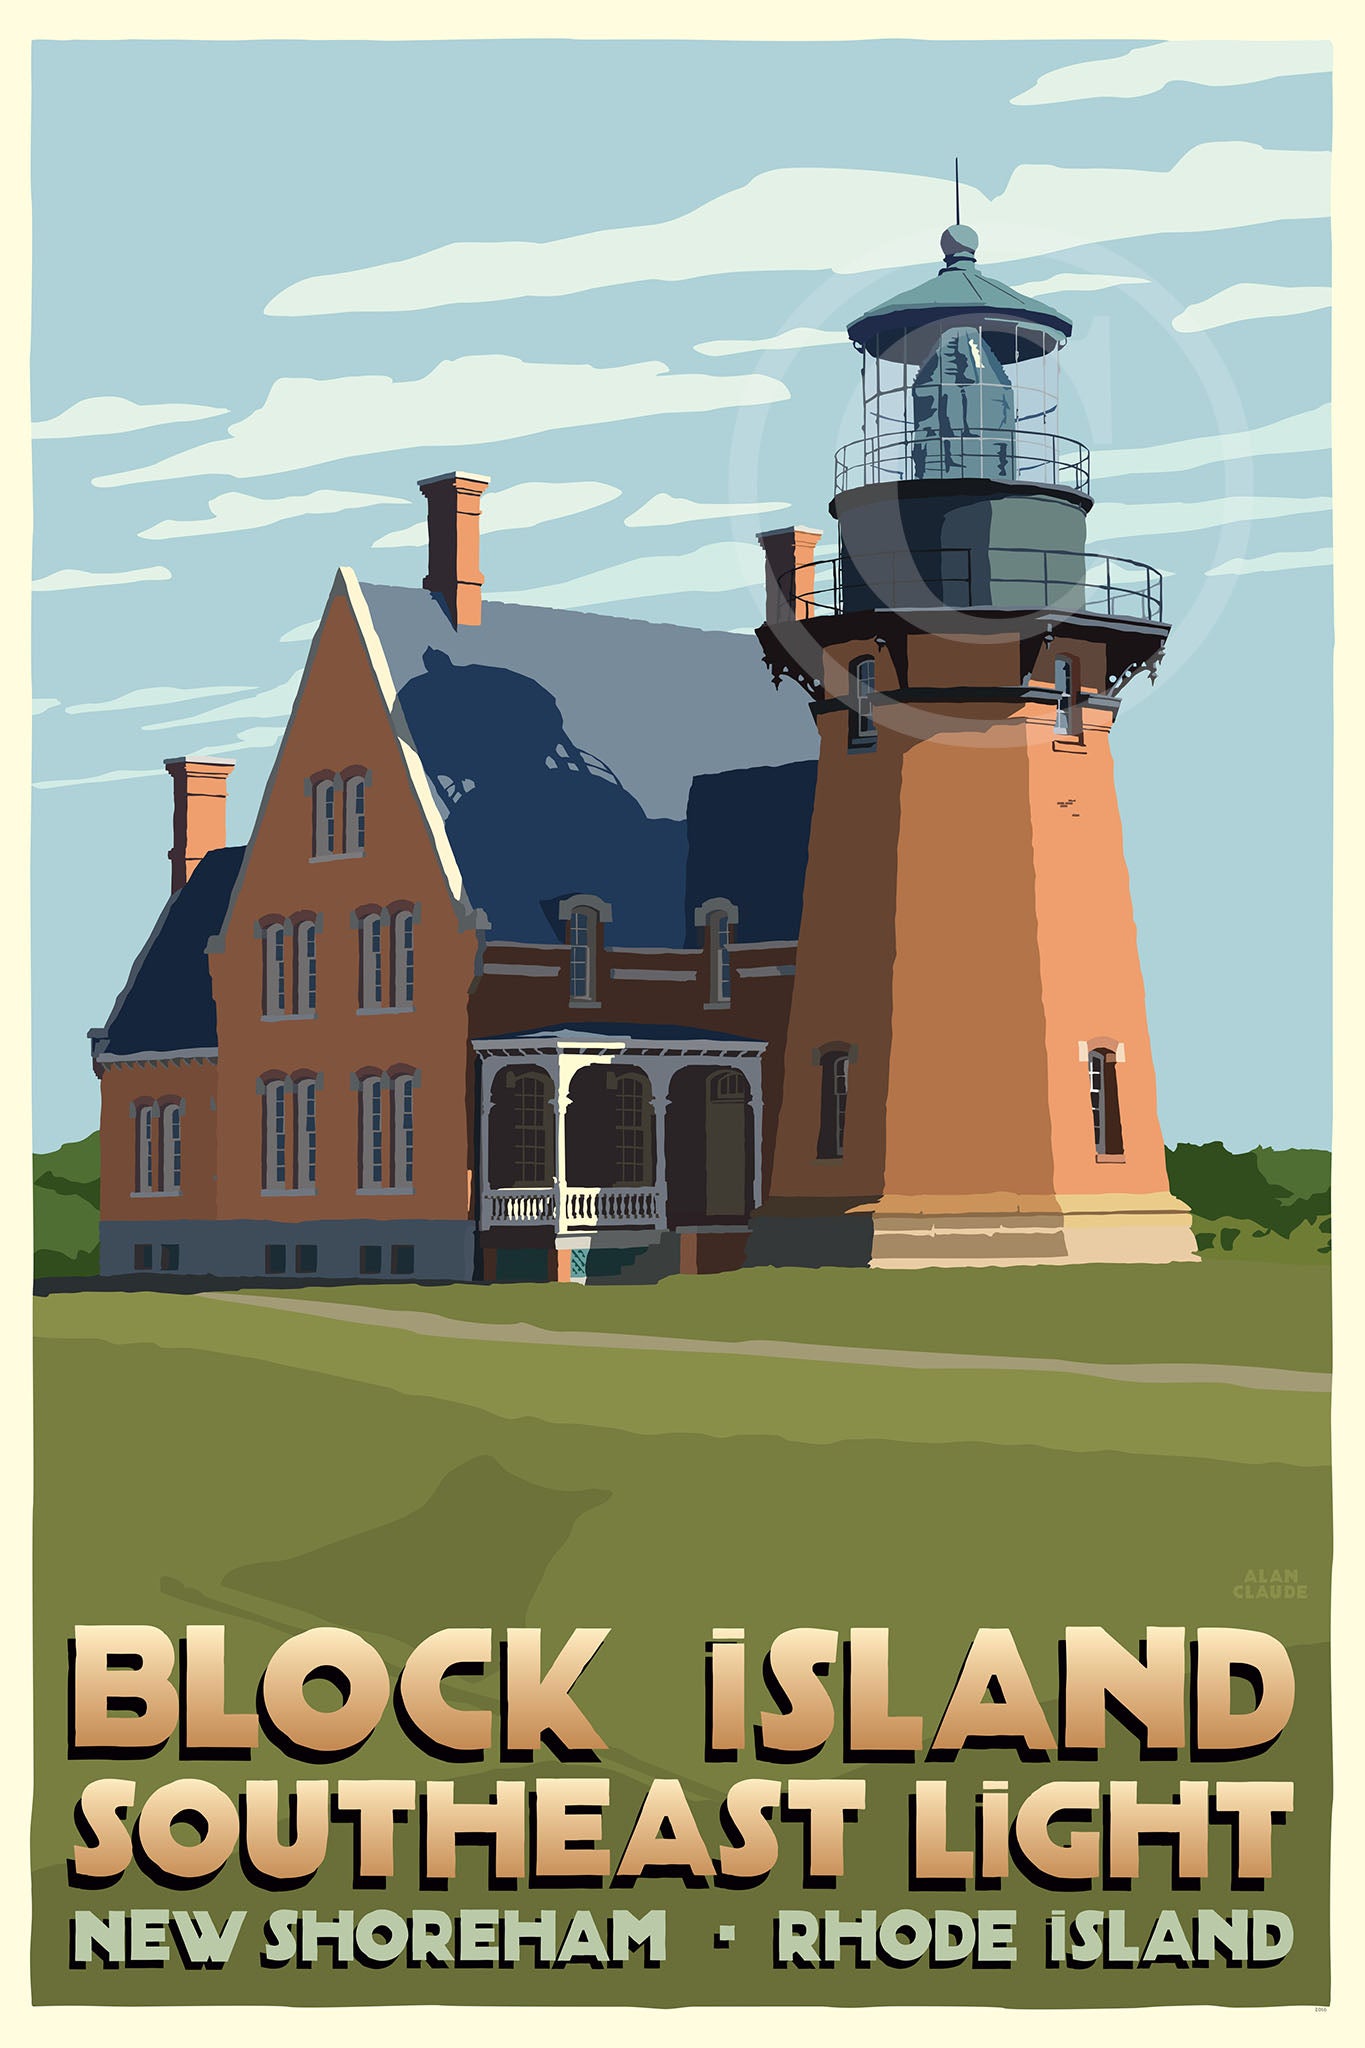 Block Island Southeast Light Art Print 24" x 36" Travel Poster By Alan Claude - Rhode Island